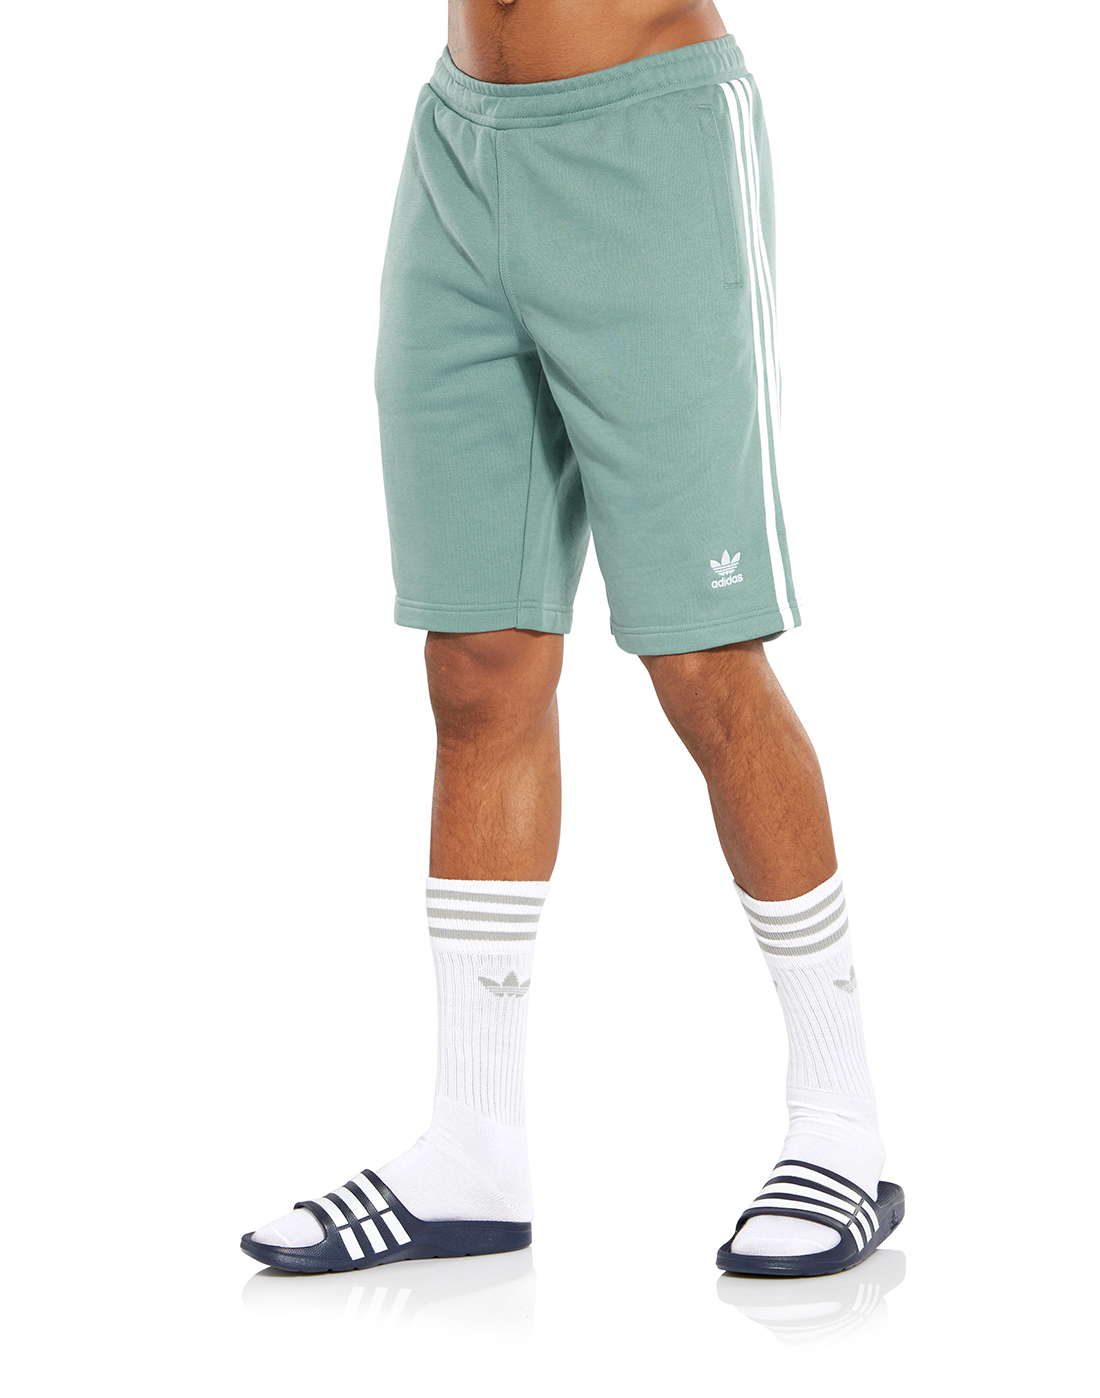 adidas green shorts mens